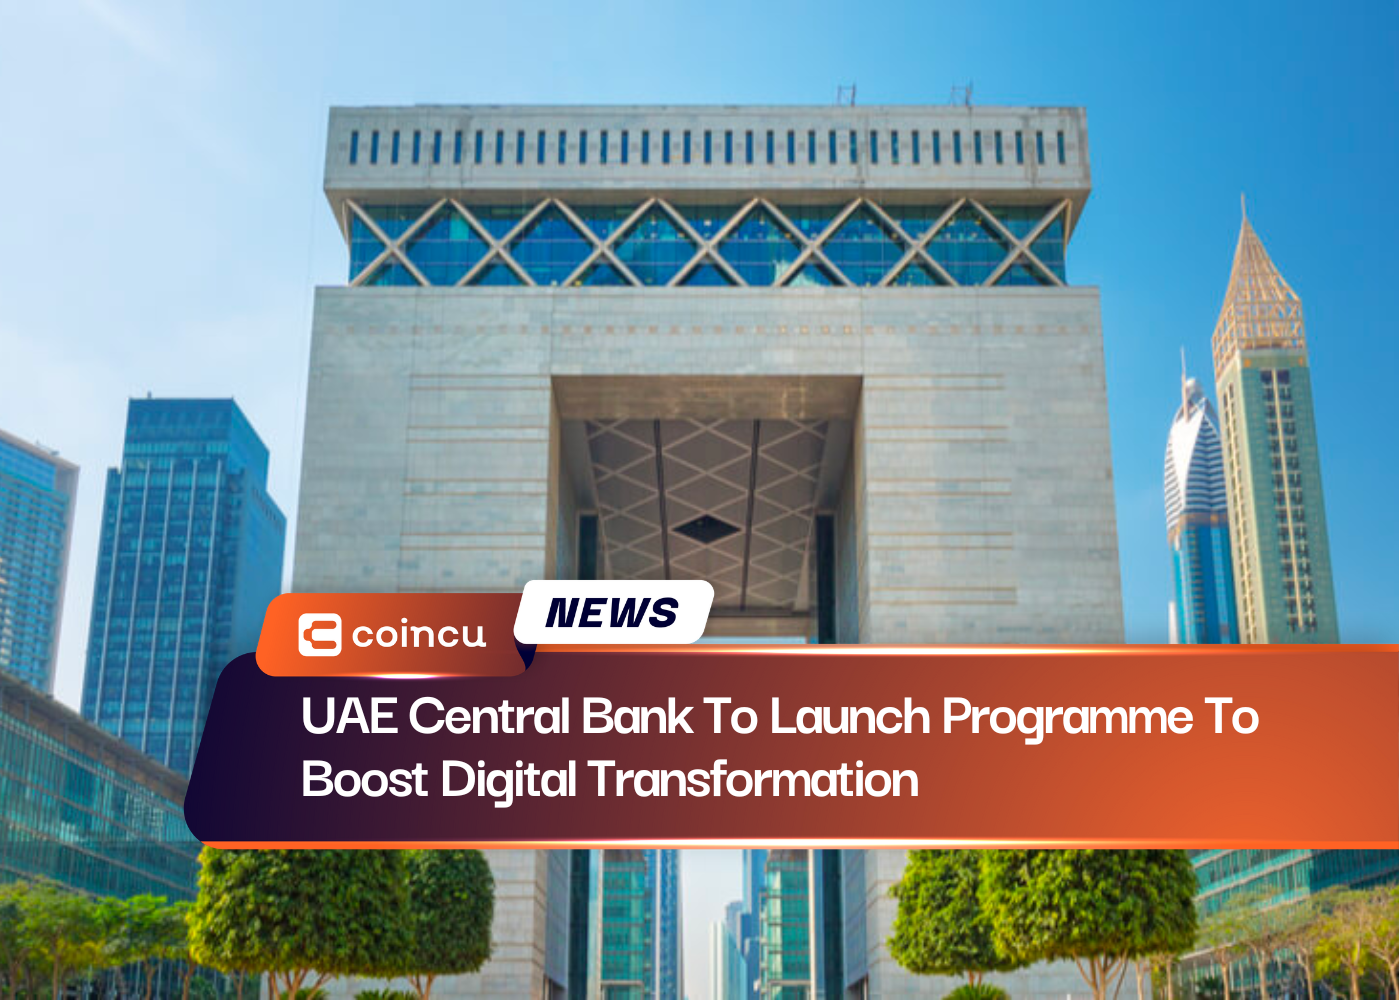 阿联酋中央银行将推出促进数字化转型的计划